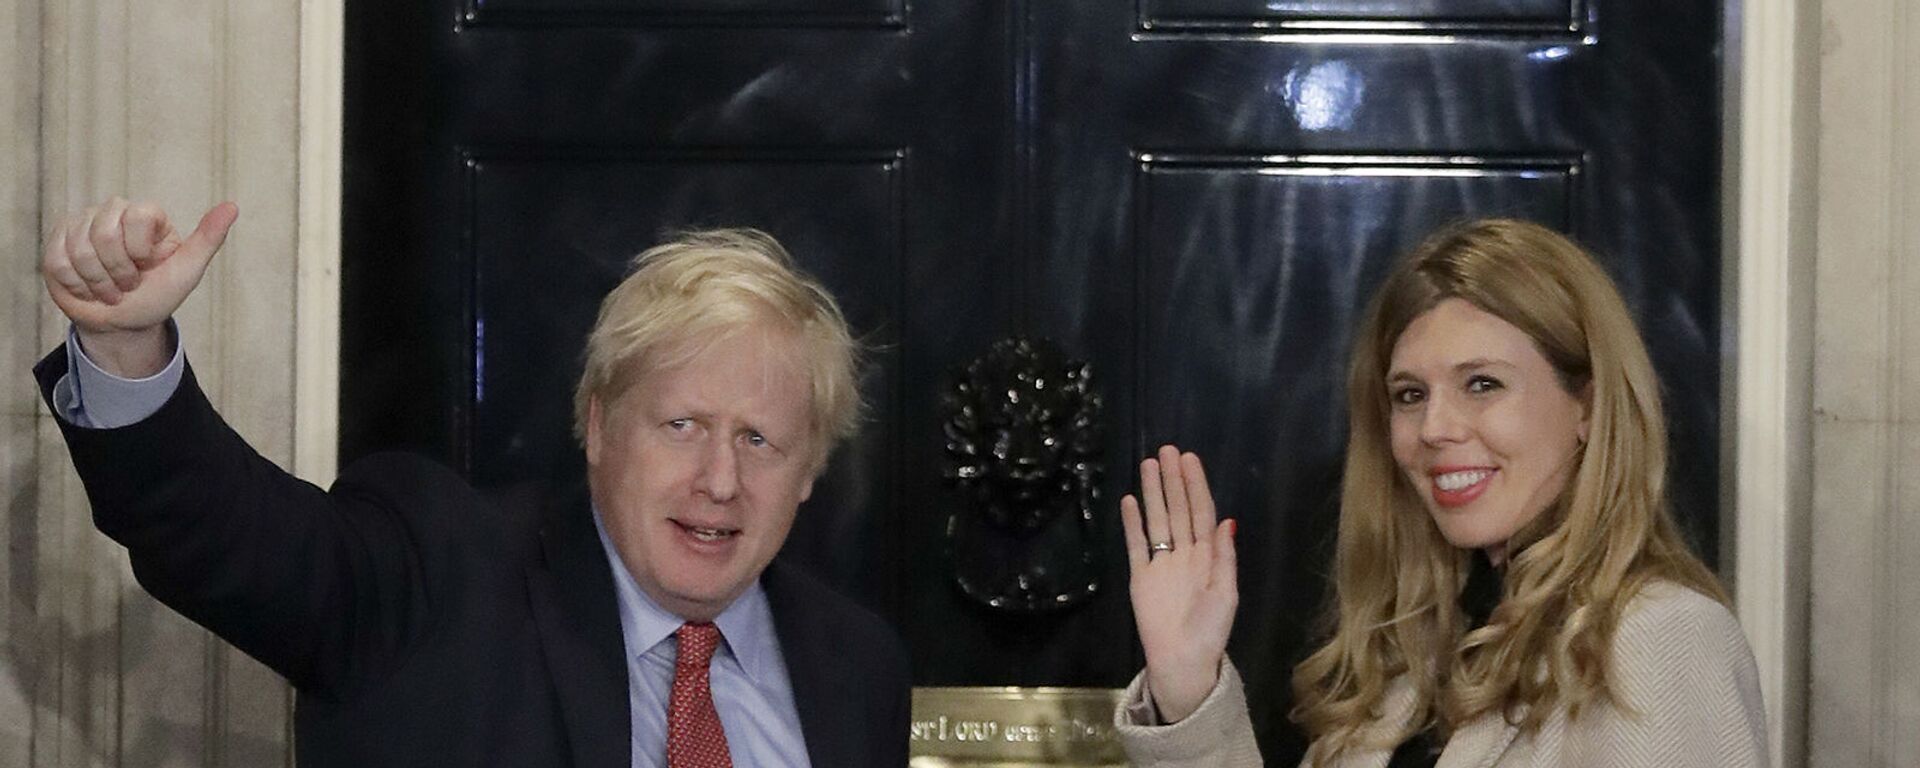 Премьер-министр Великобритании Борис Джонсон и Кэрри Саймондс машут рукой со ступенек на Даунинг-стрит  - Sputnik Արմենիա, 1920, 30.05.2021